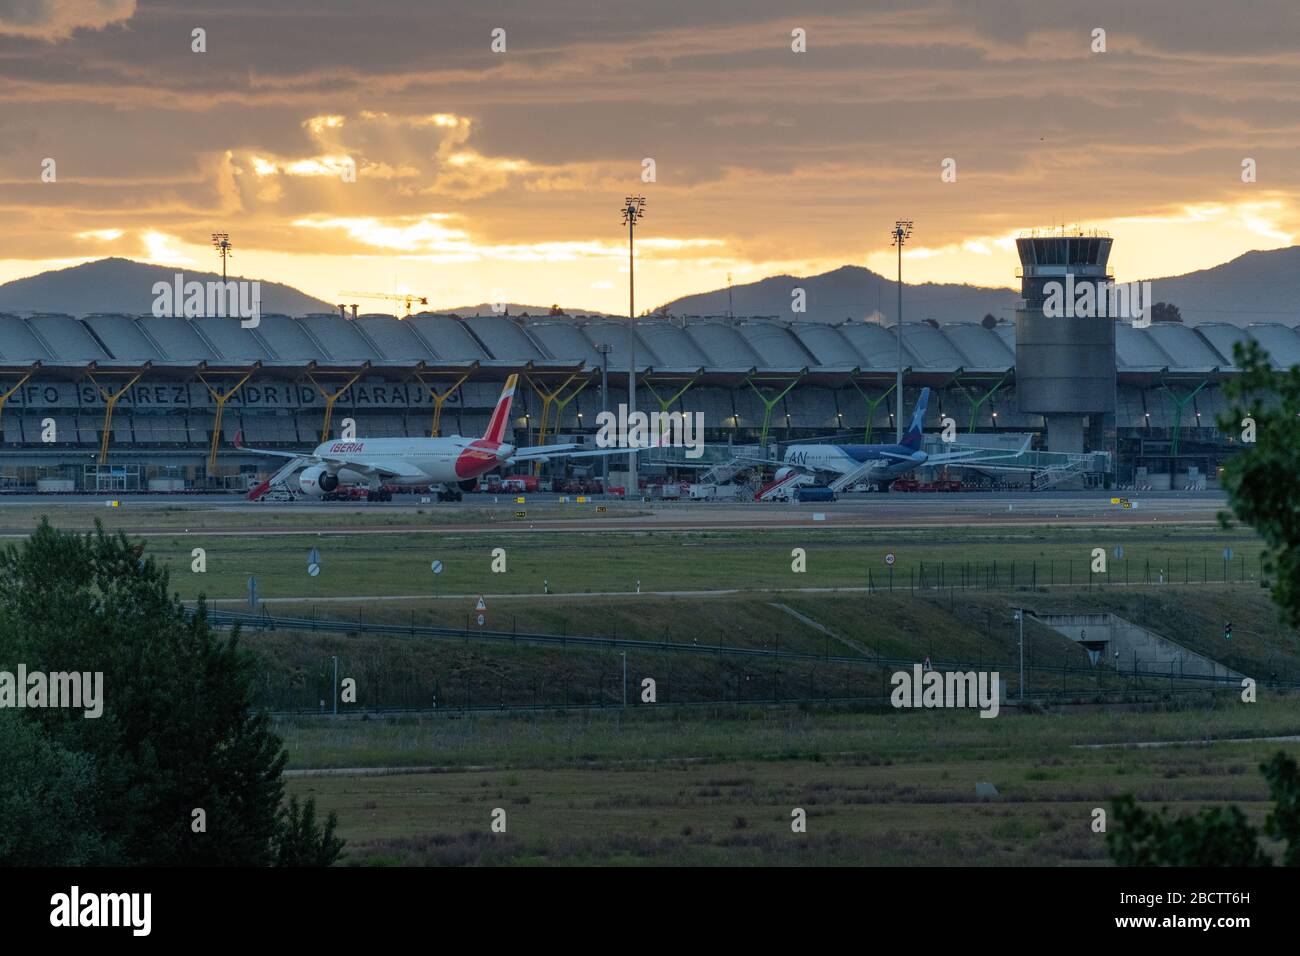 MADRID, SPANIEN - 17. MAI 2019: Flugzeuge verschiedener Luftgesellschaften im Terminal T4 des internationalen Flughafens Adolfo Suarez Madrid-Barajas, in su Stockfoto